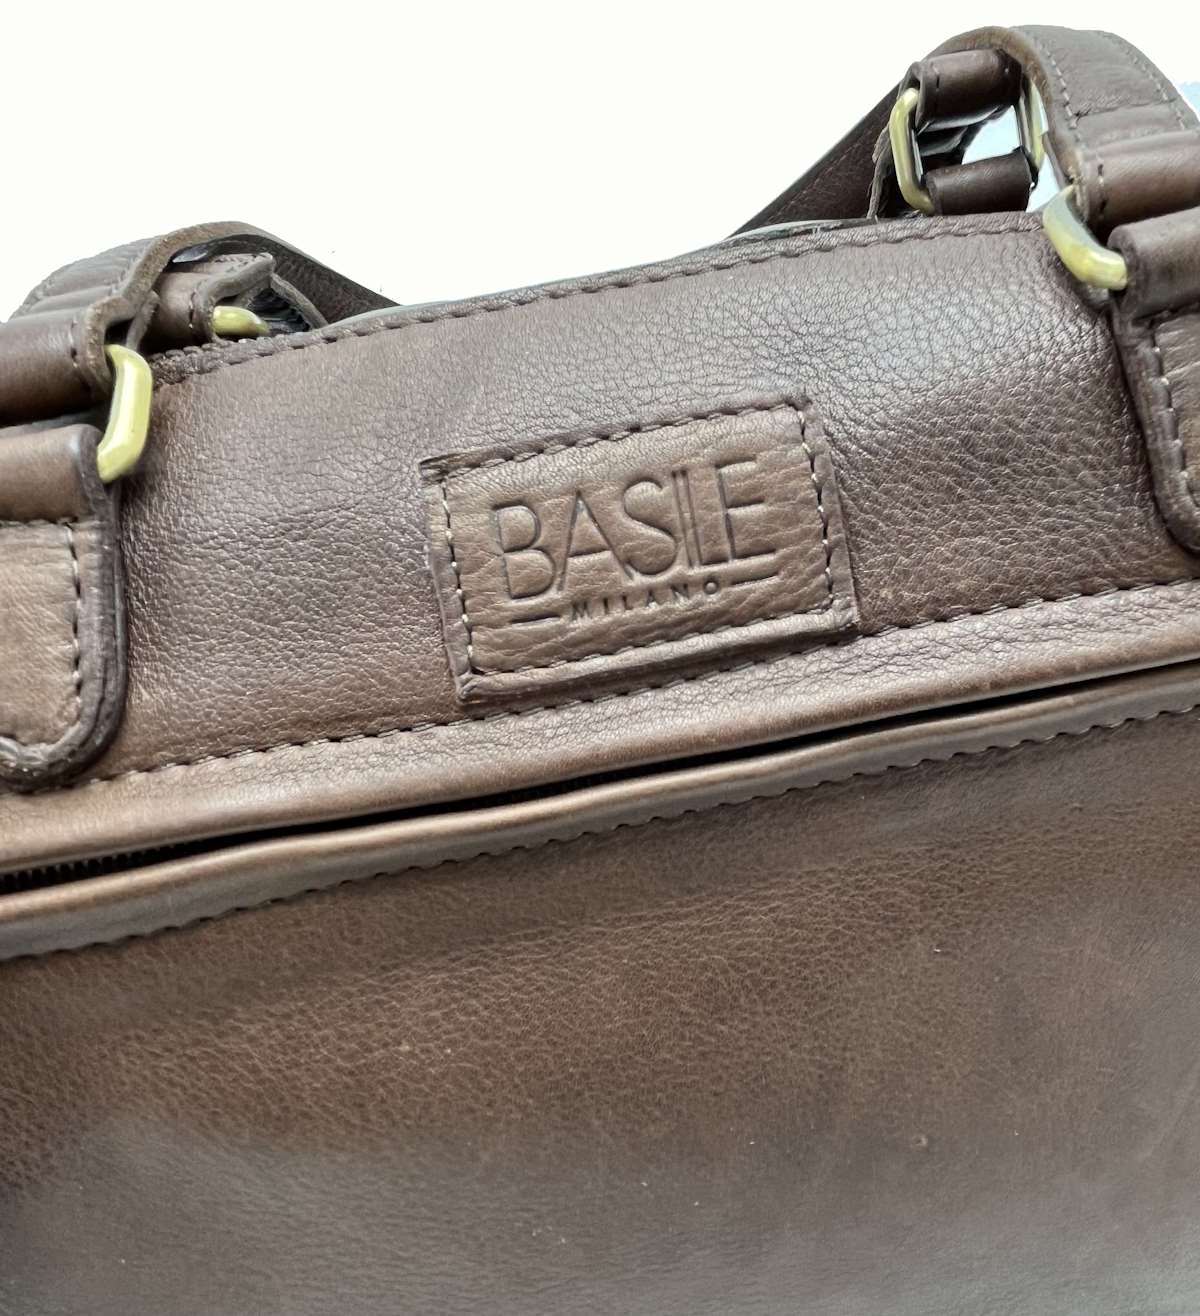 Genuine Leather shoulder bag, Brand Basile,  art. BA3673DX.392